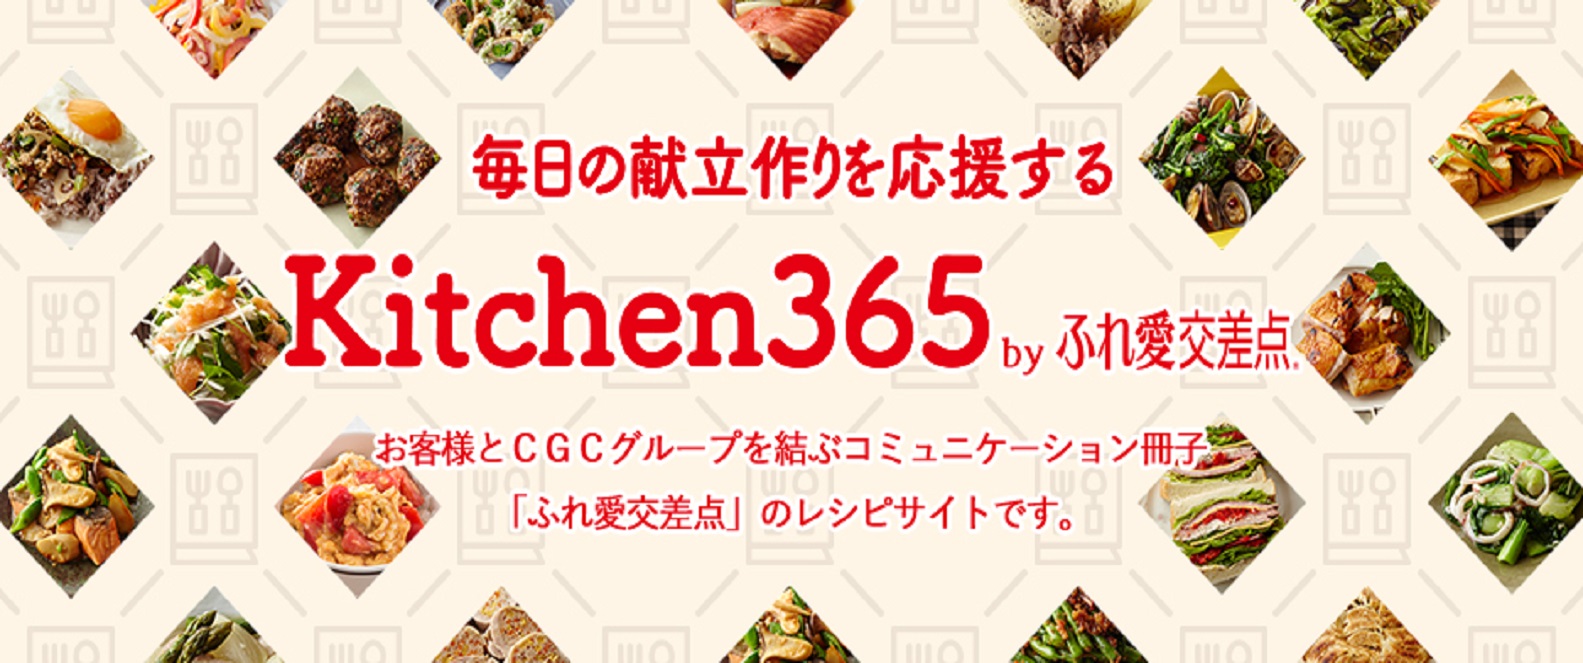 kitchen365